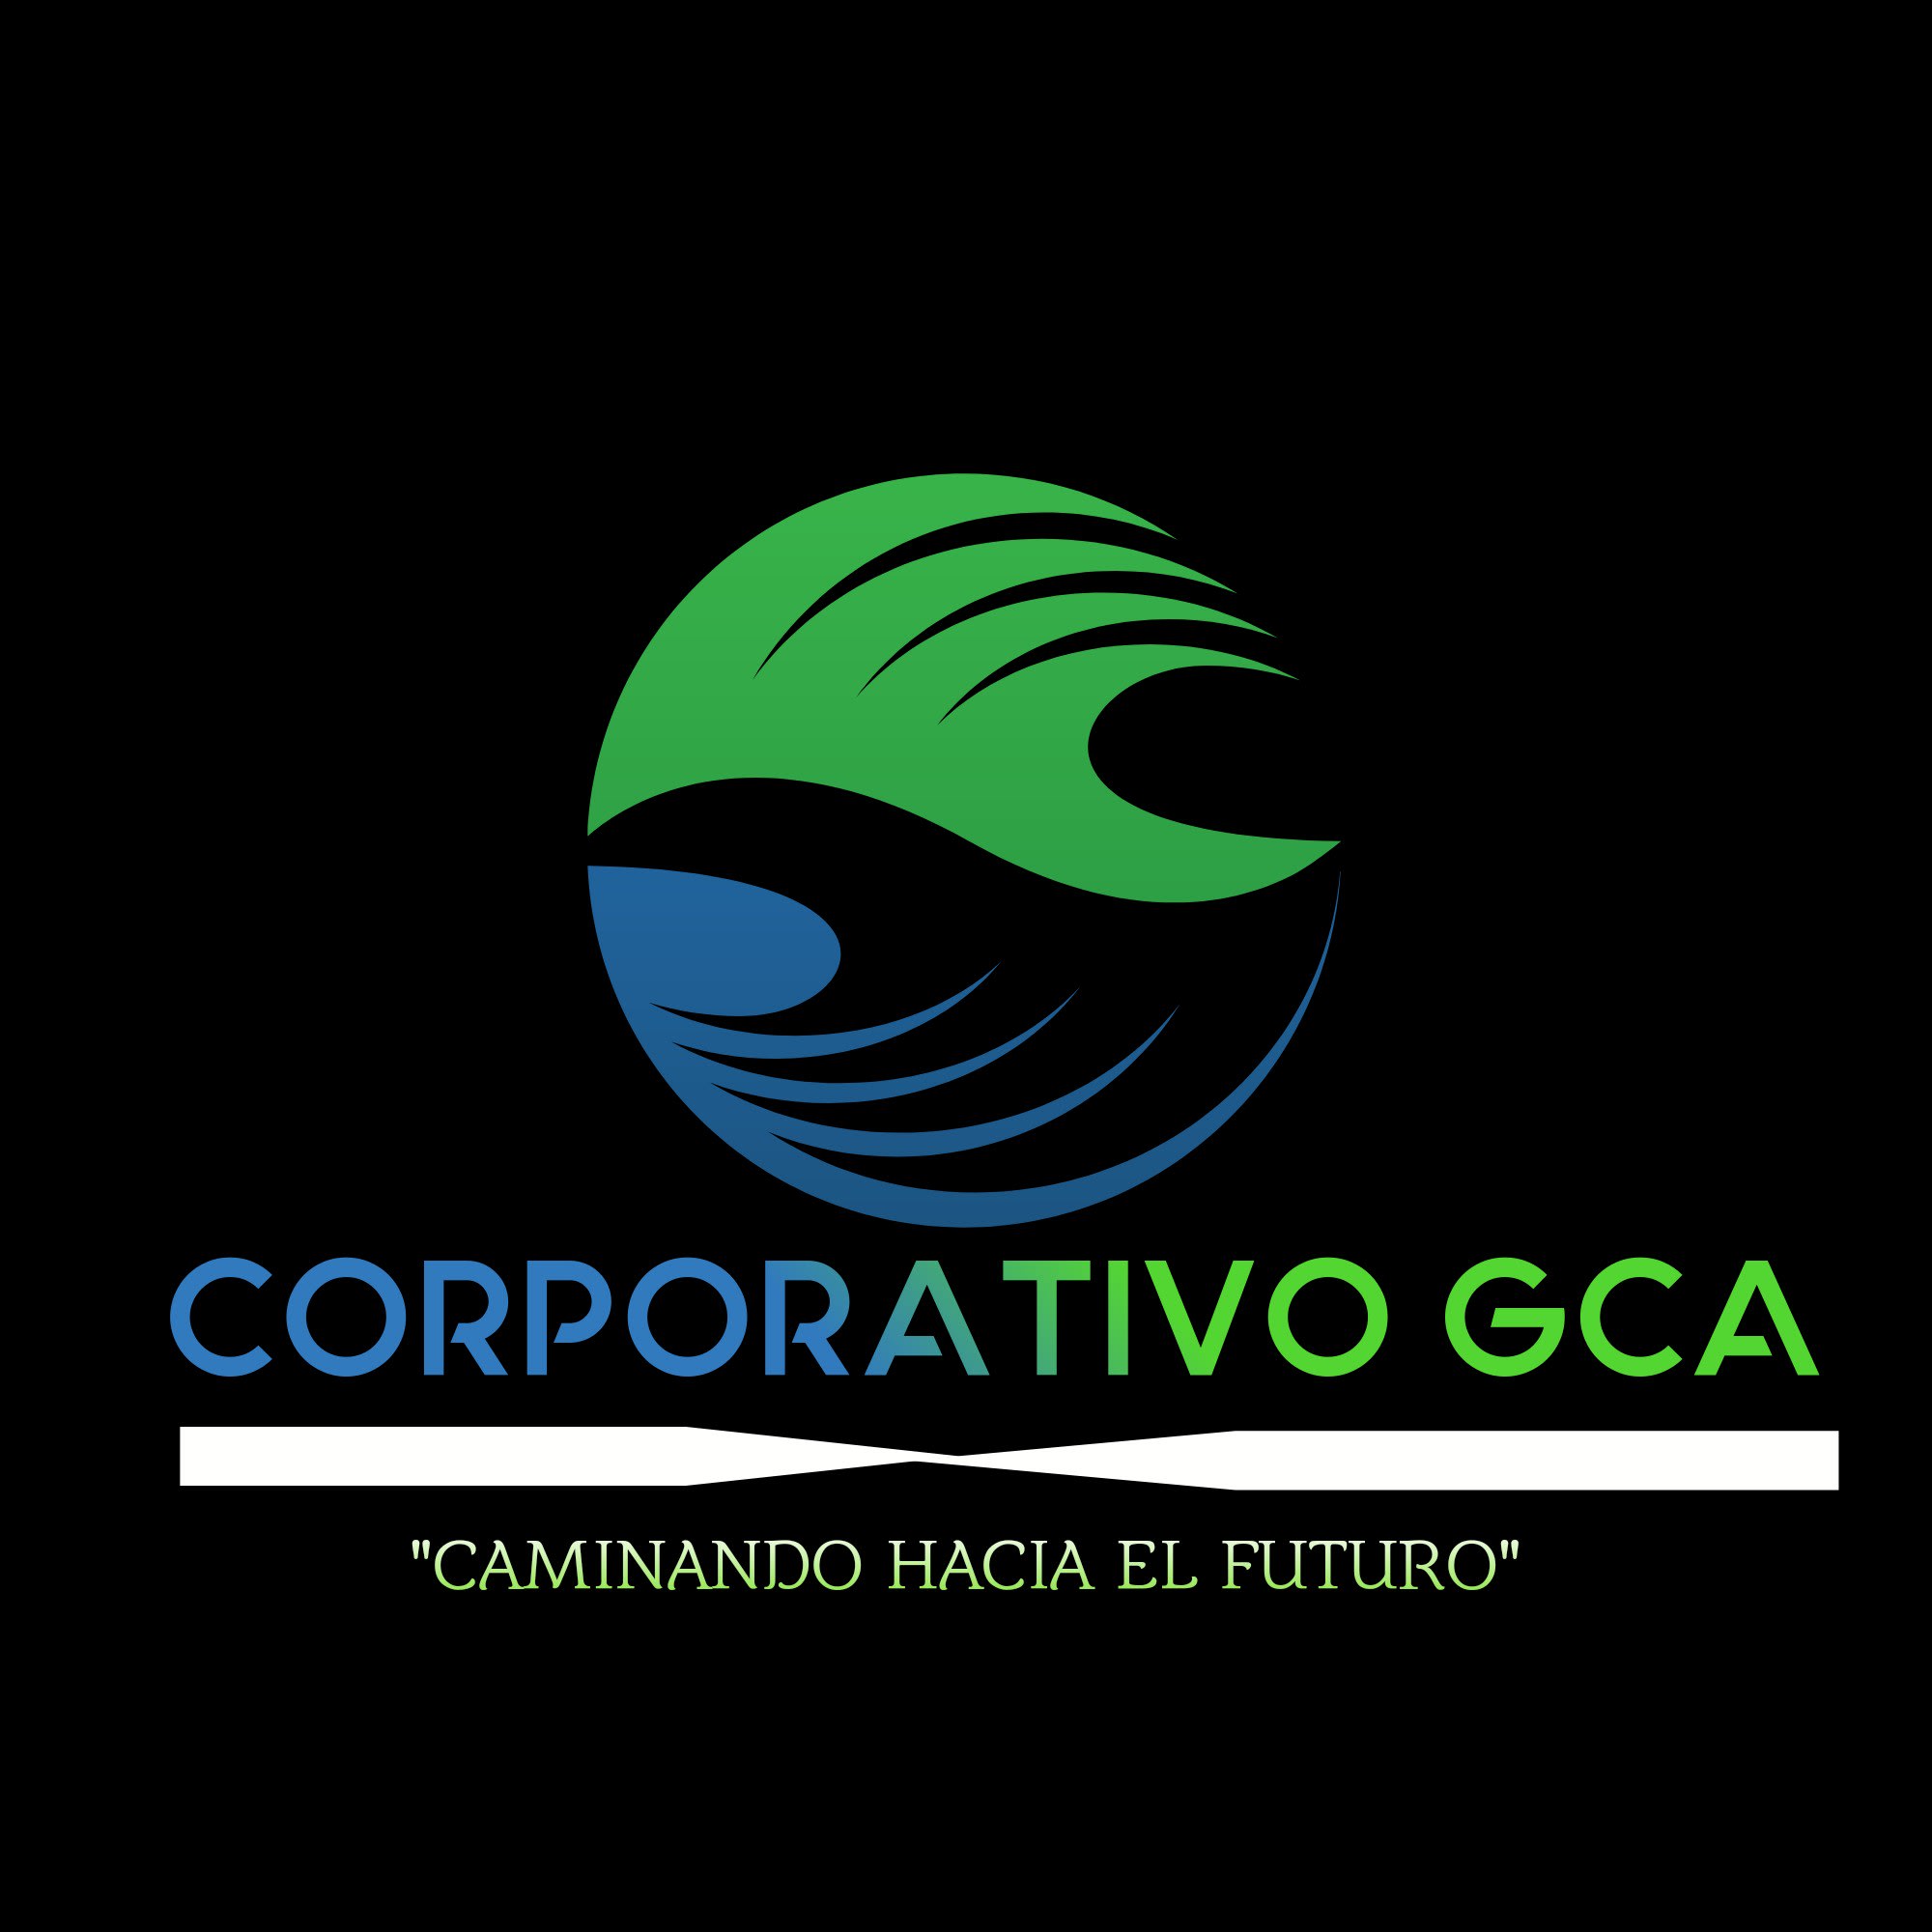 Corporativo GCA